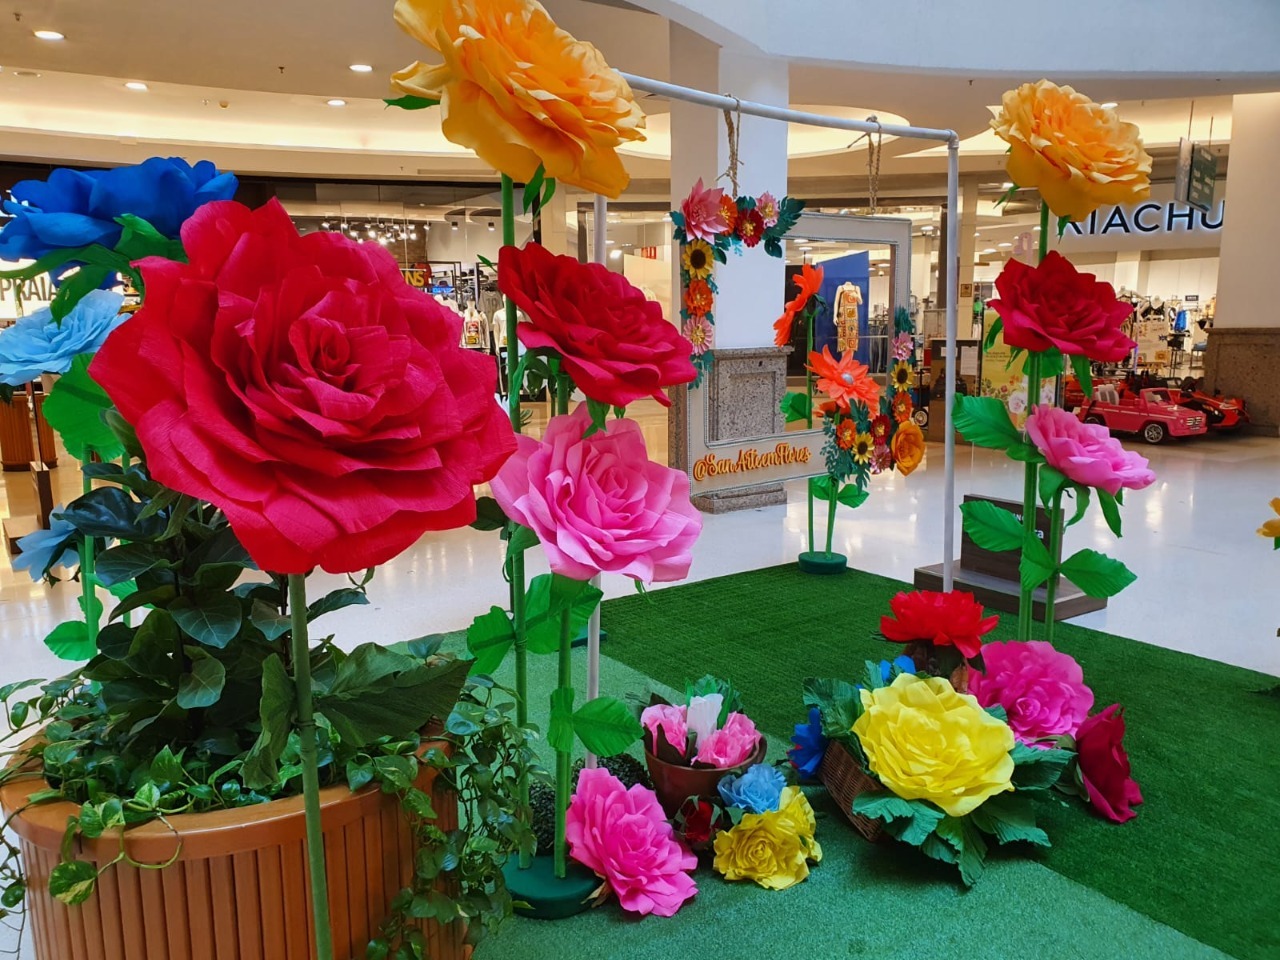 Diadema recebe exposição gratuita de flores gigantes